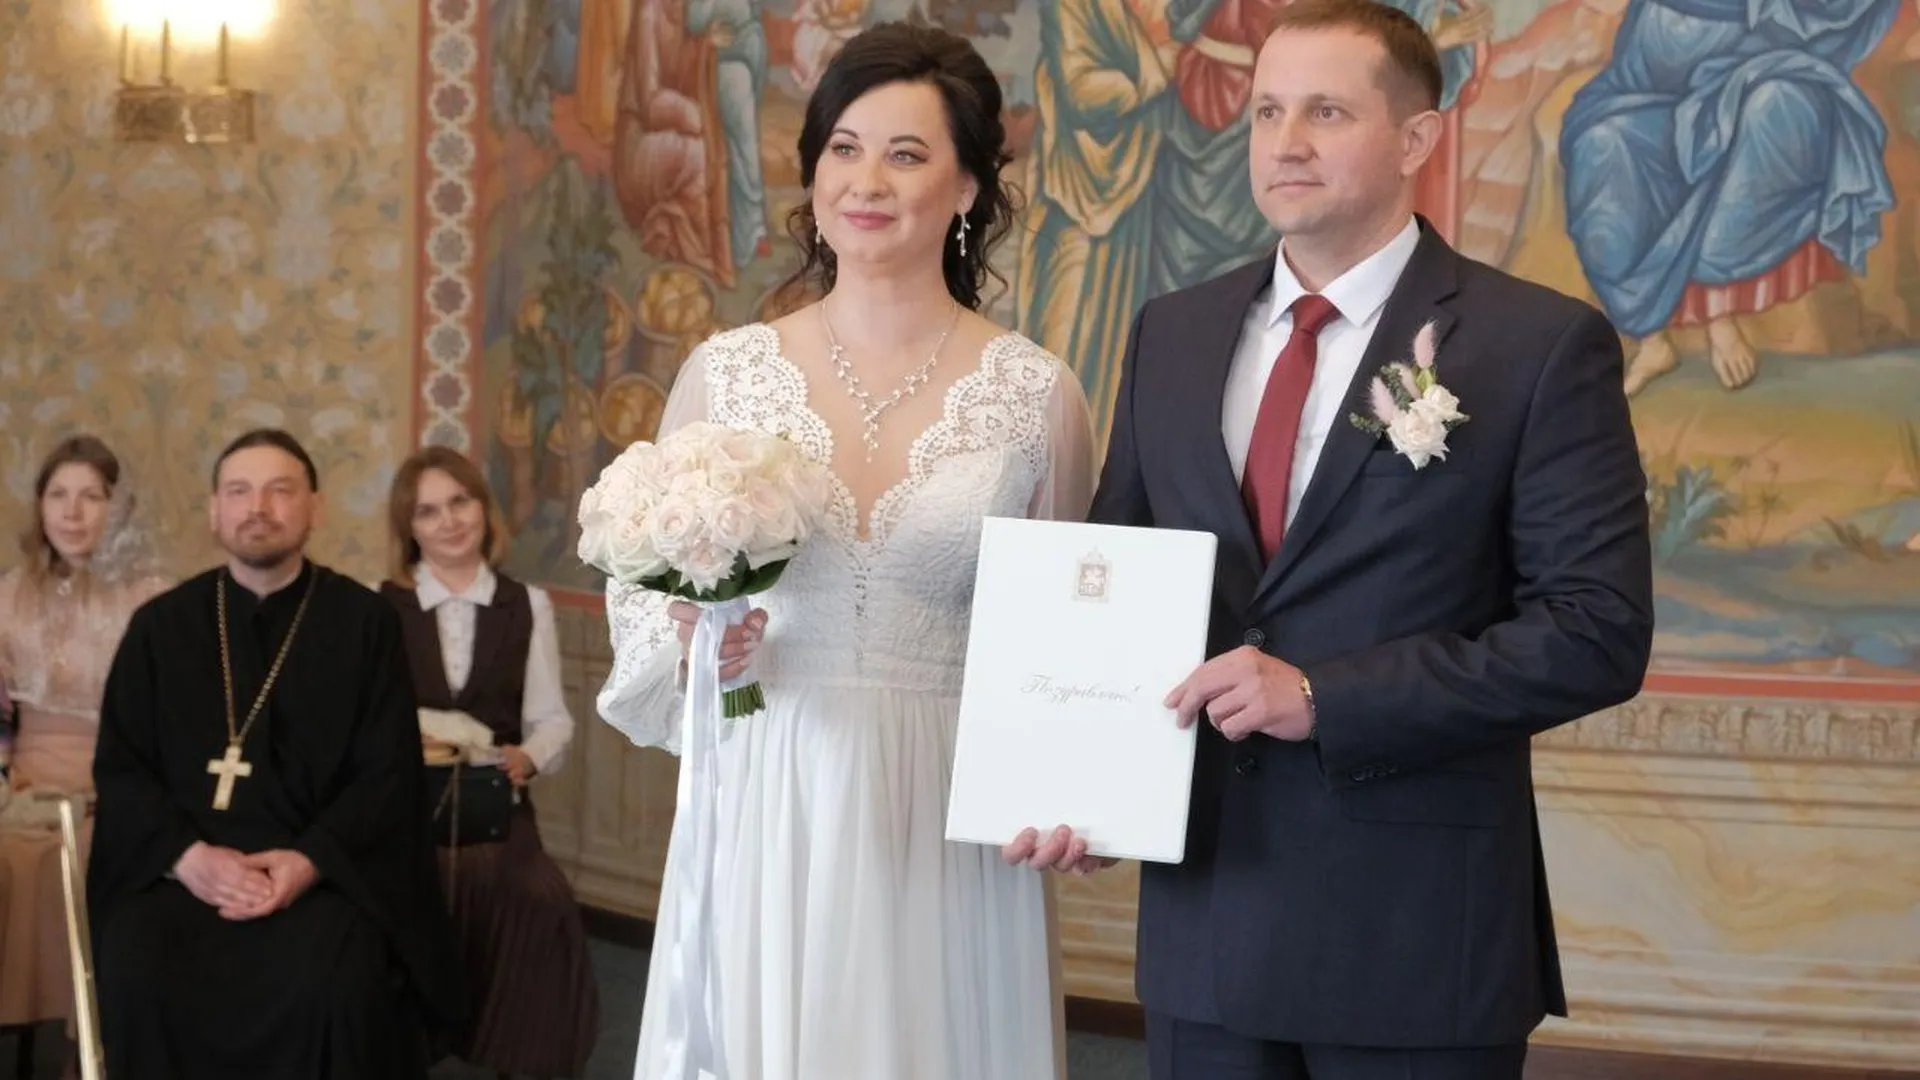 Случай регистрации брака и венчания в один день зафиксирован в Подмосковье